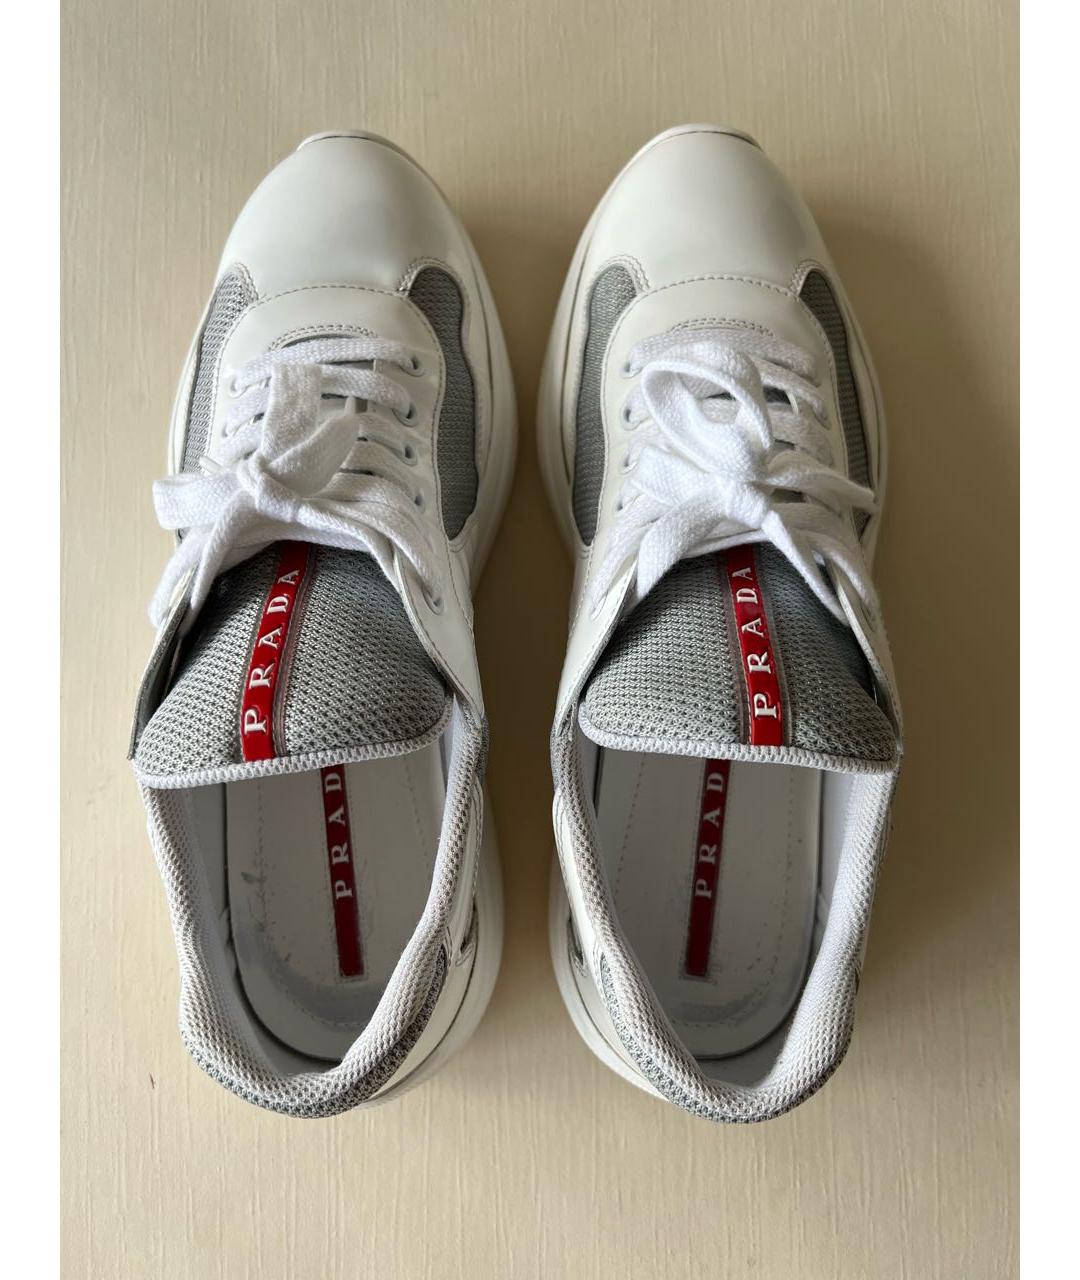 PRADA Белые кожаные низкие кроссовки / кеды, фото 3